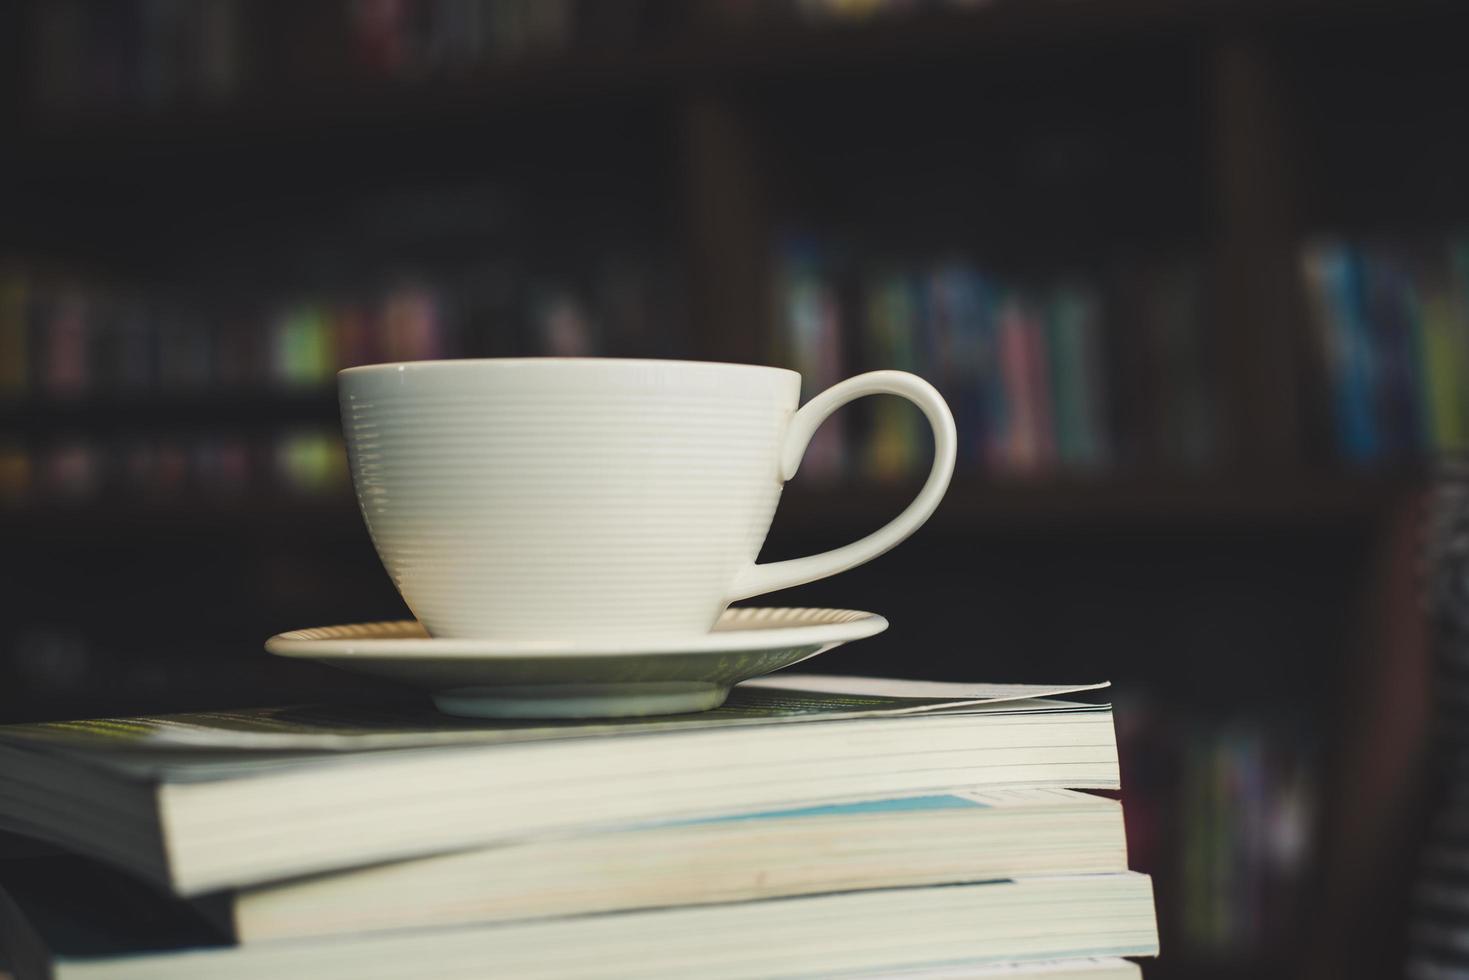 kaffekopp och bunt med böcker på träbord foto